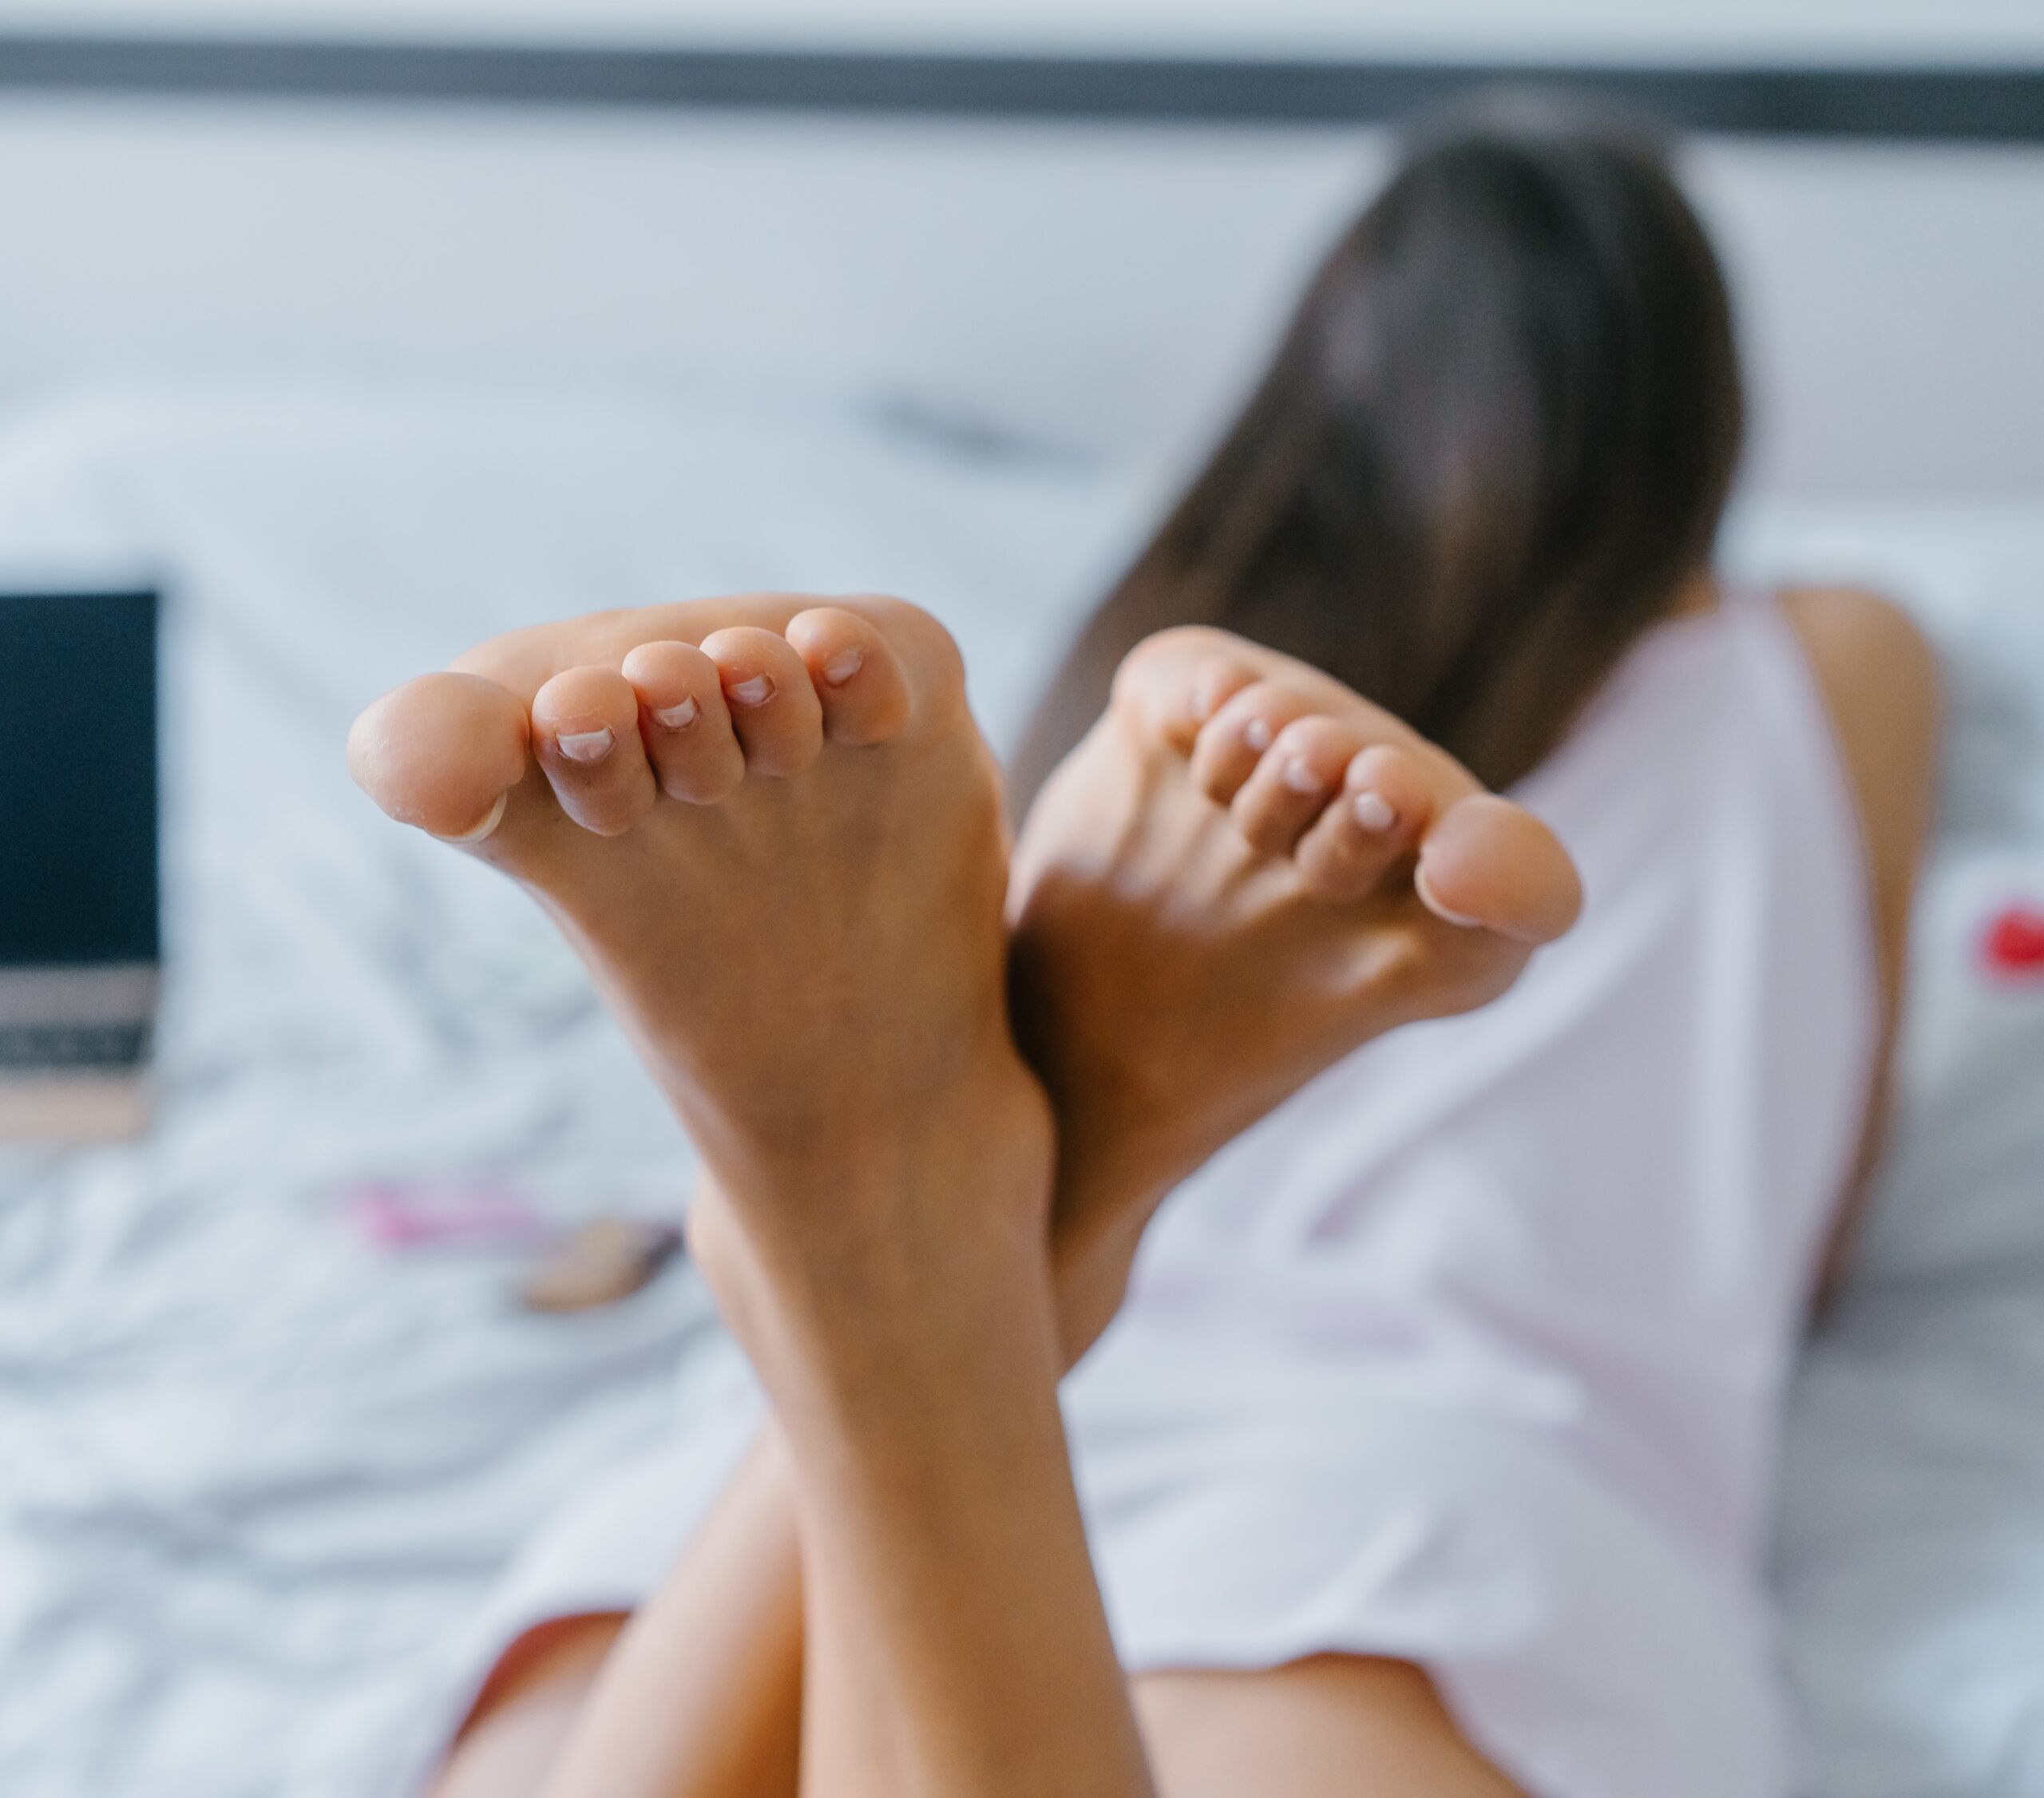 Экзотичная женщина раздвигает ножки лежа в кровати и гладит пальцами вагину 